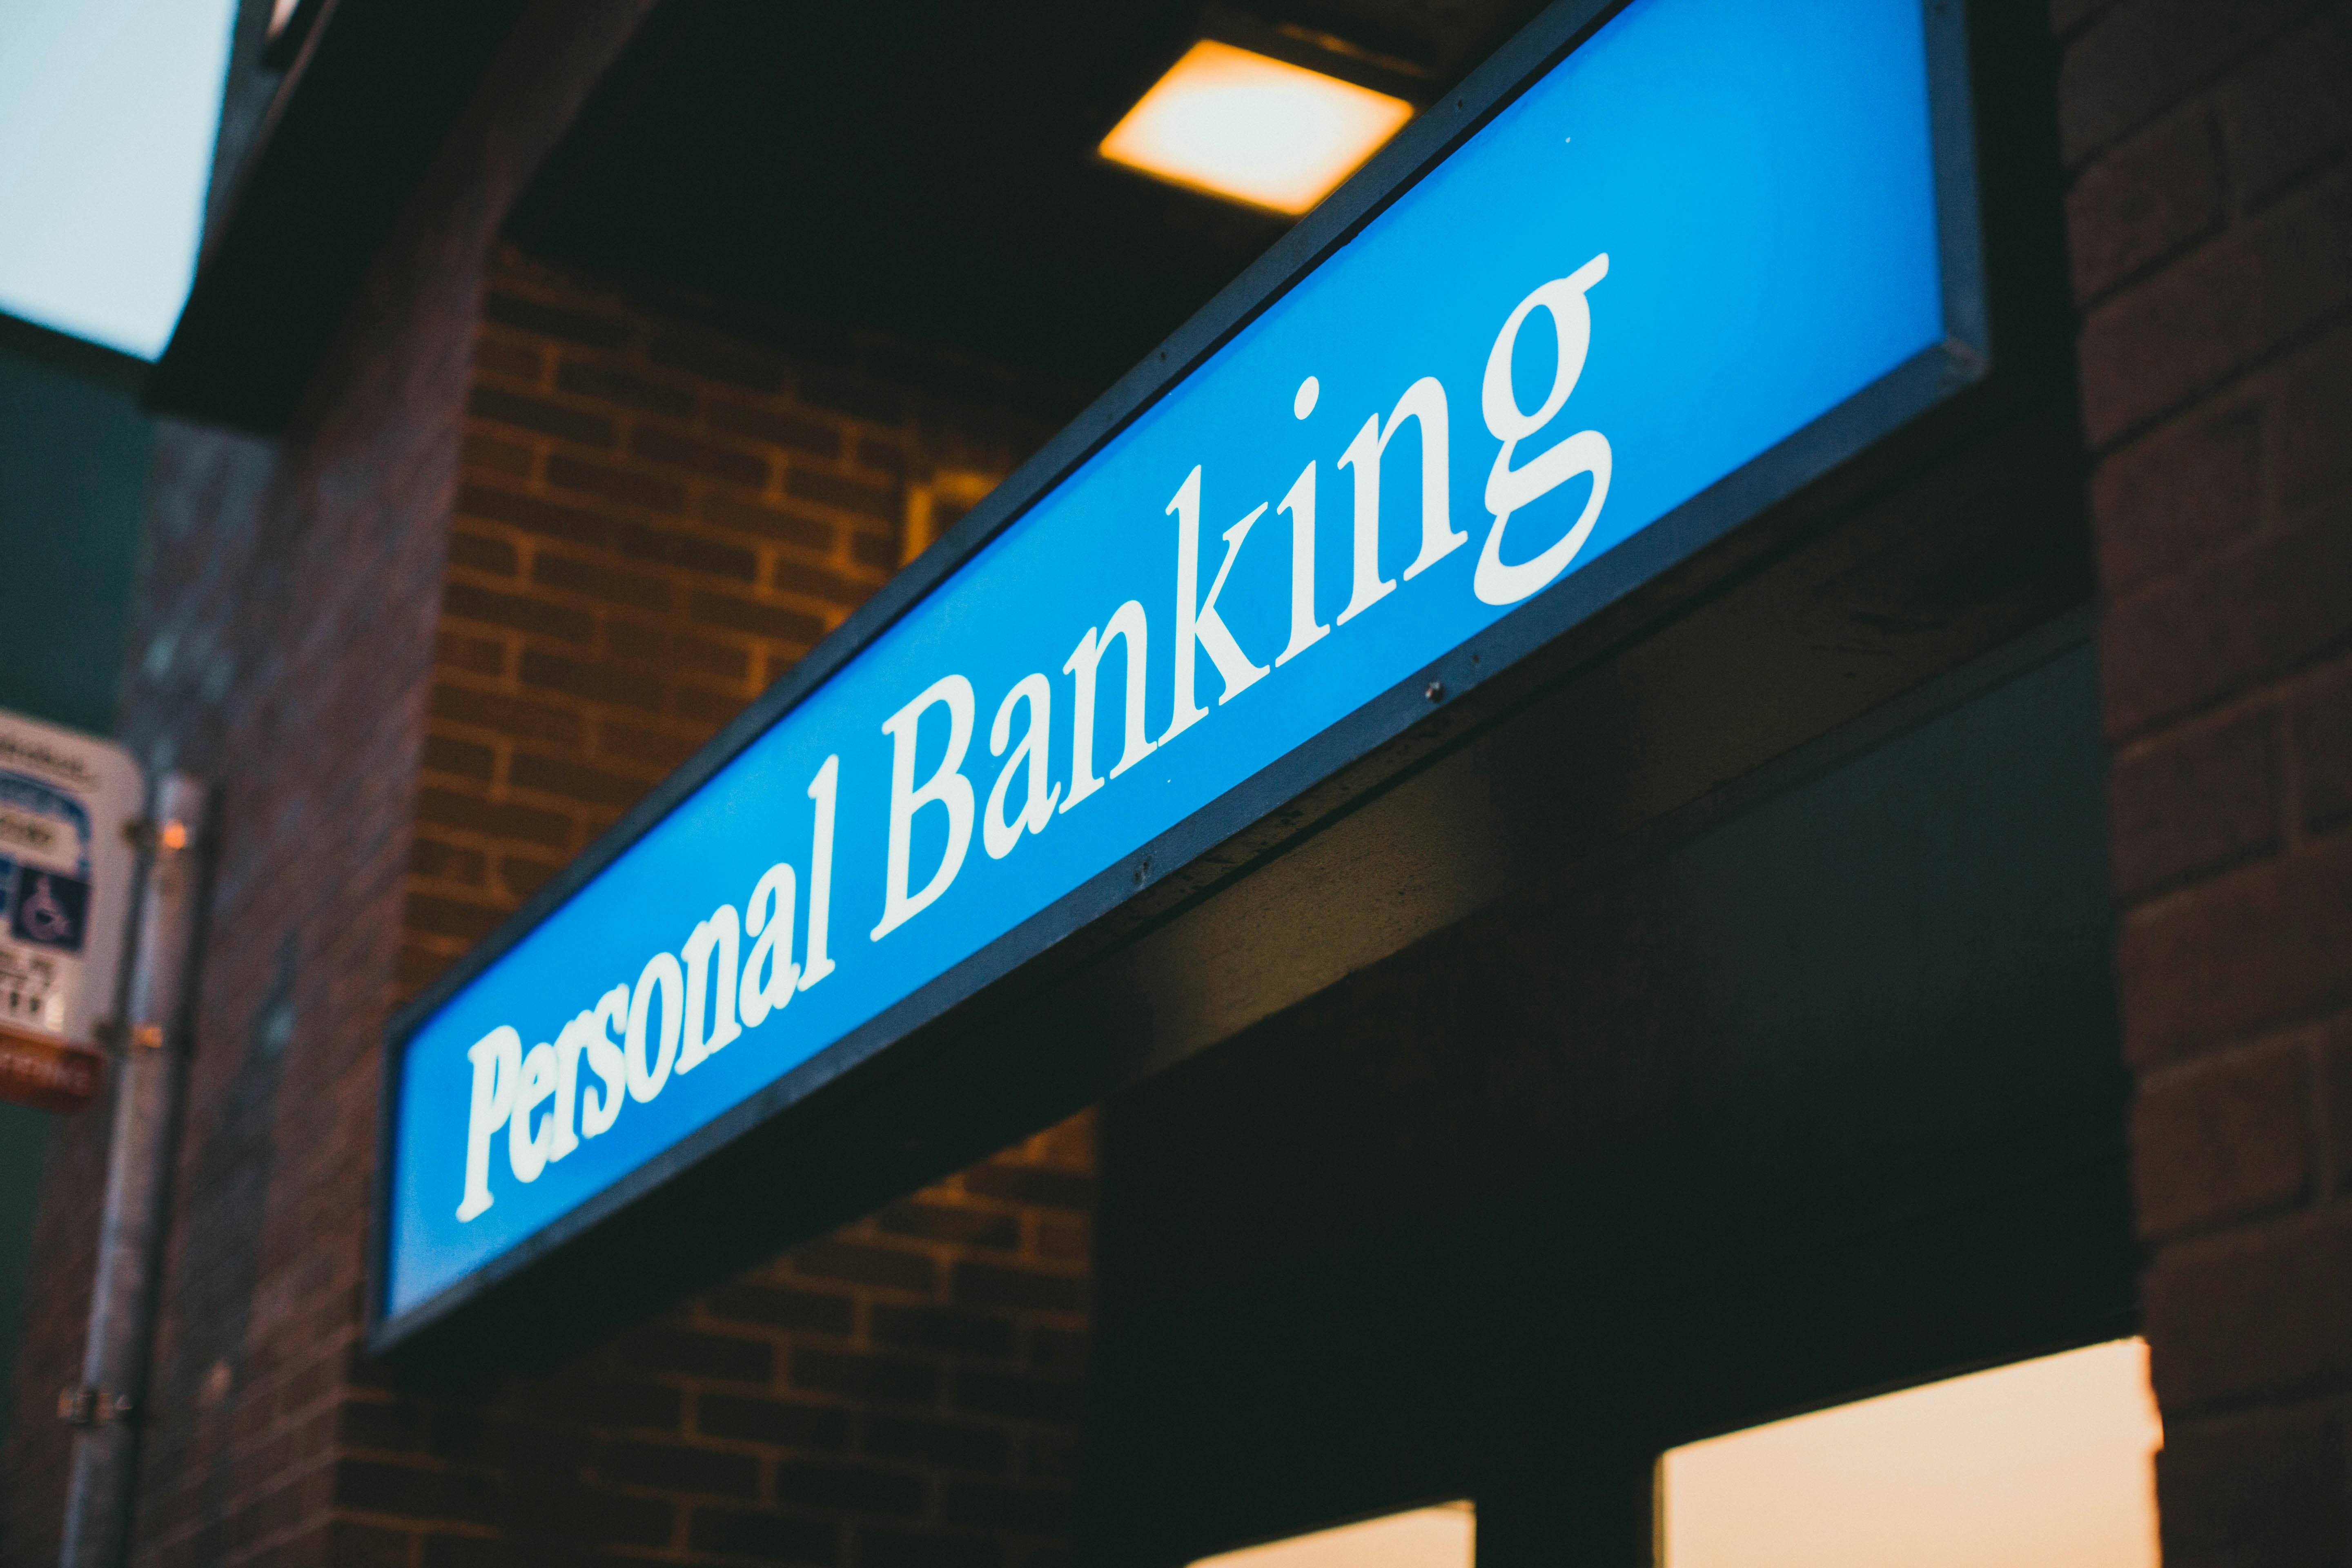 Personal banking logo